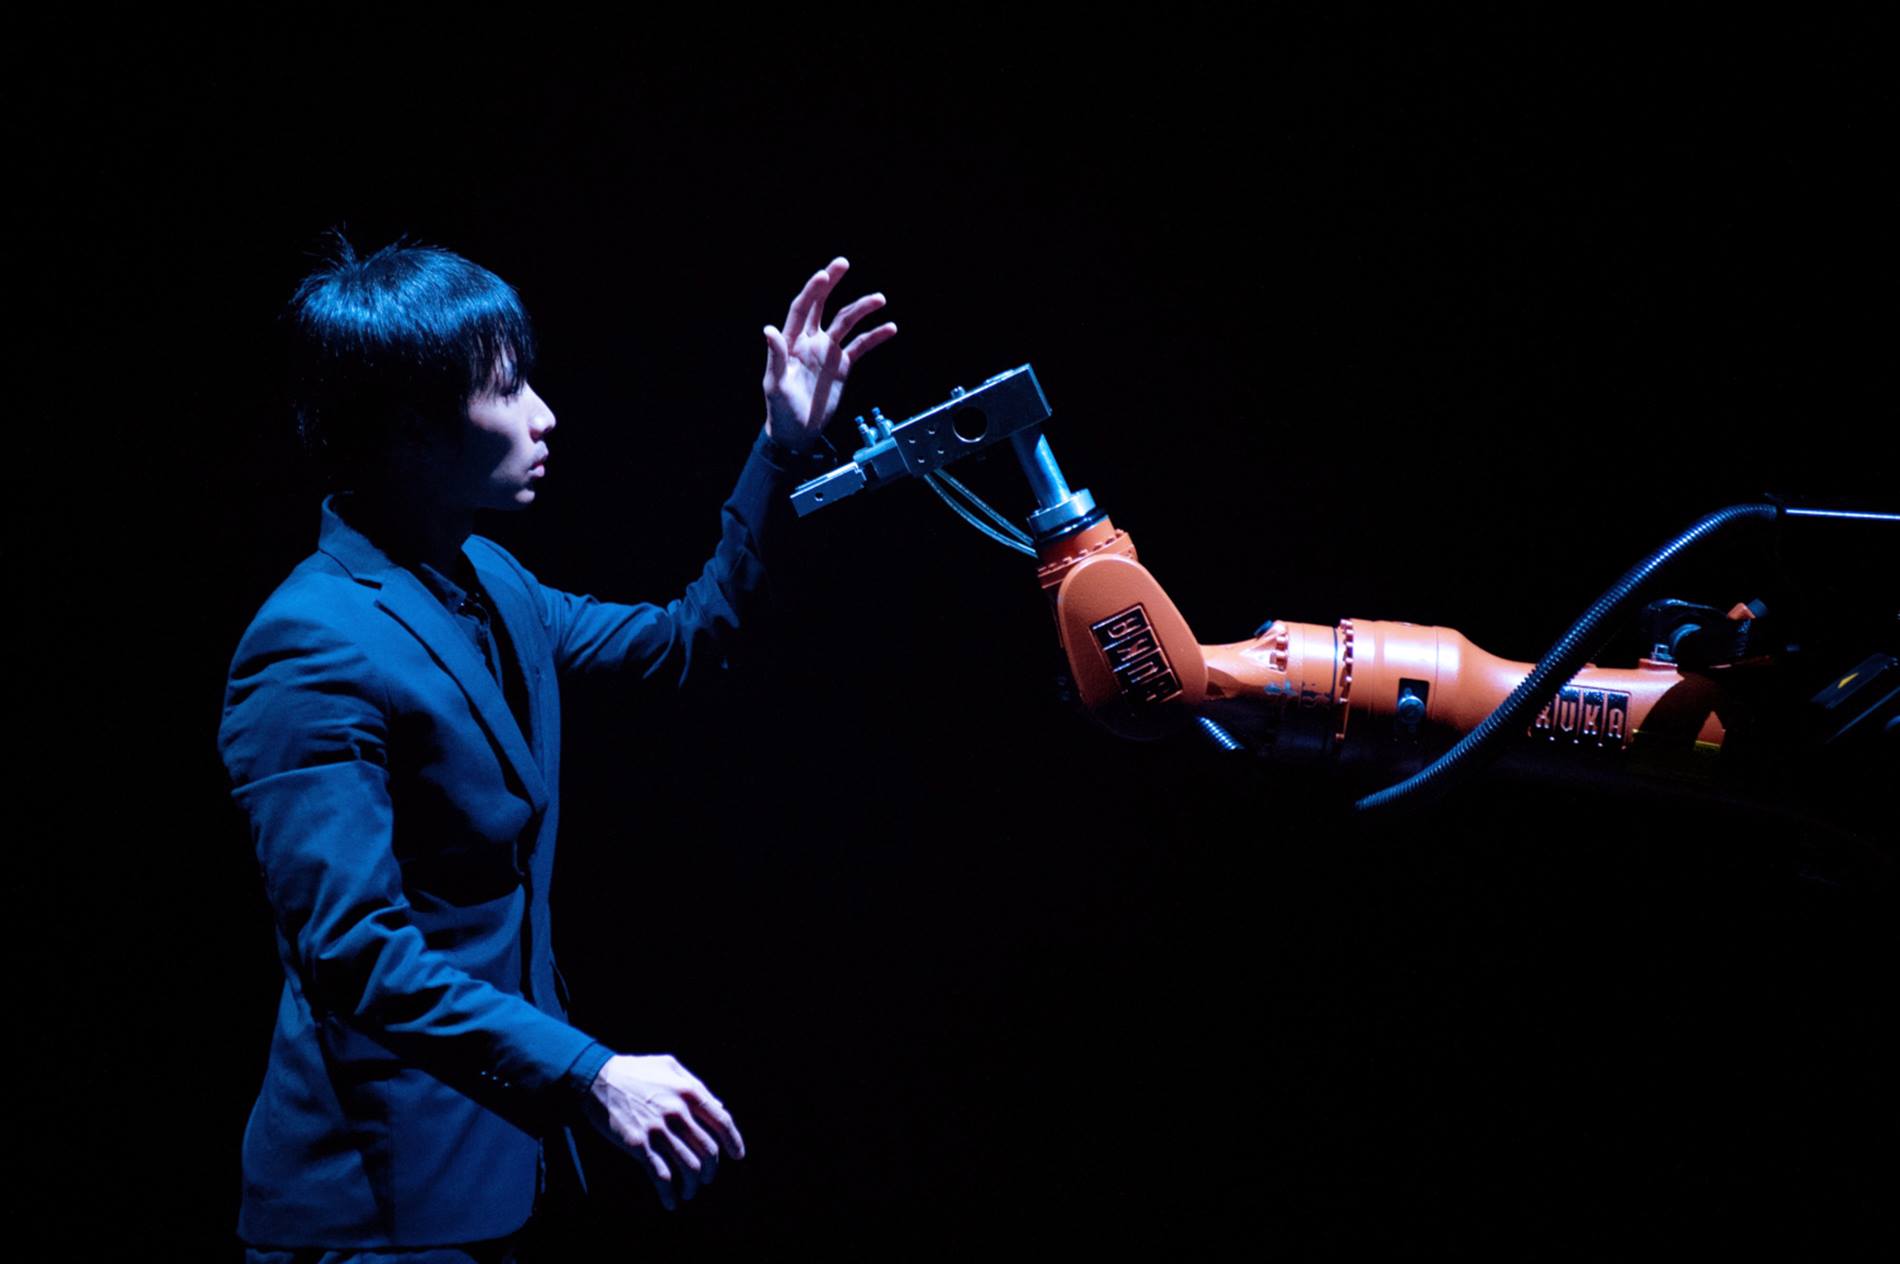 Tanzender KUKA Roboter auf der Bühne